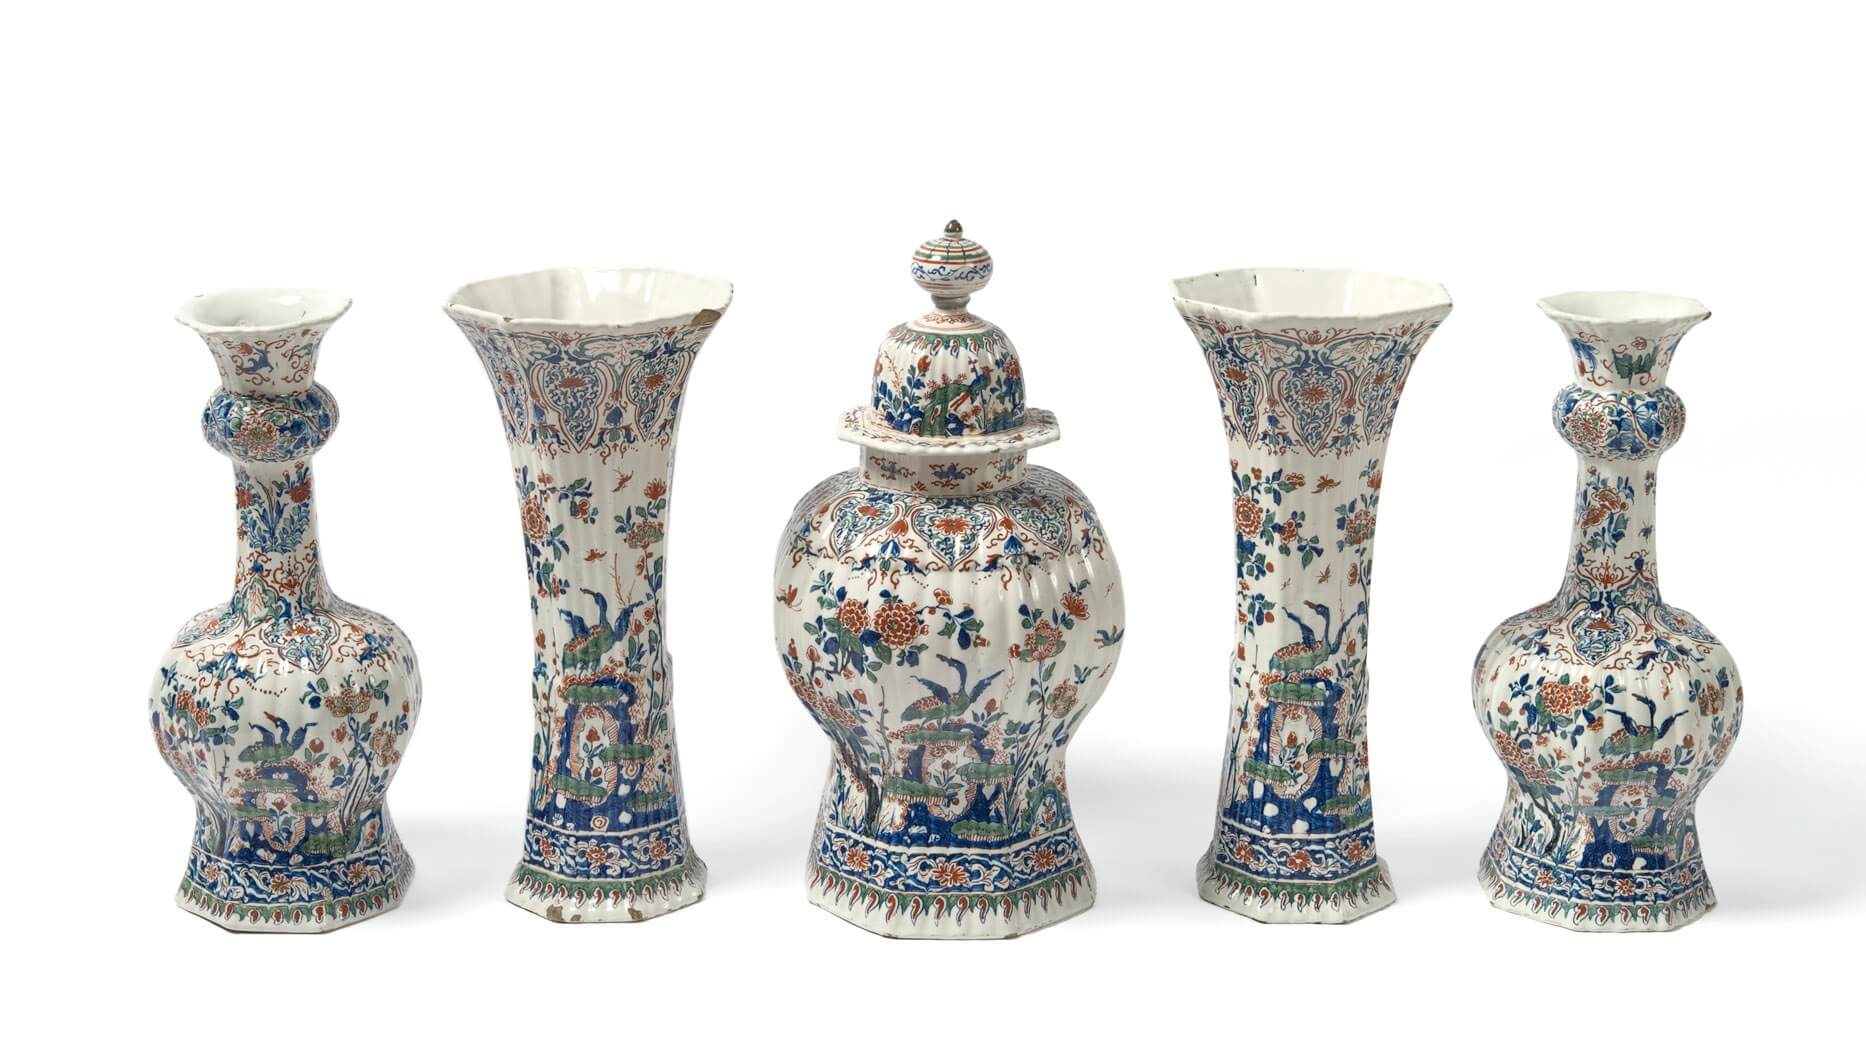 Antique Delft pottery of cashmire vases